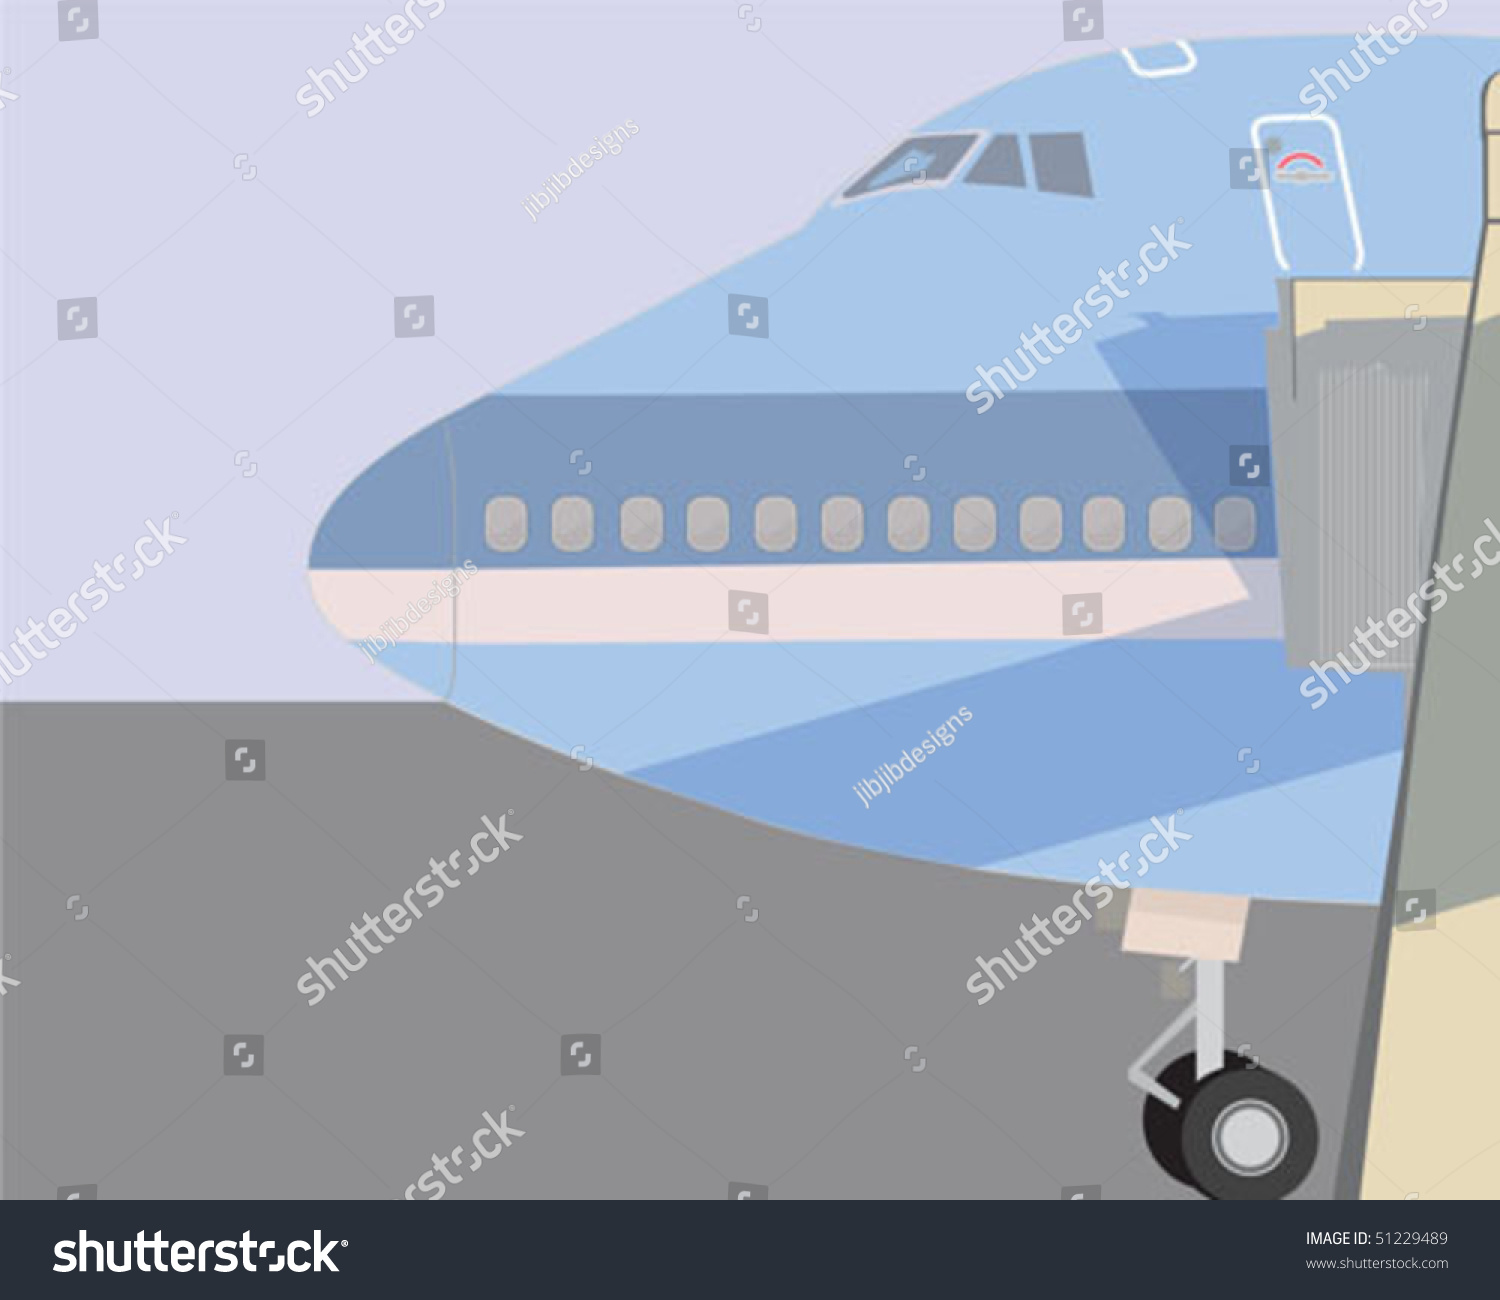 SVG of 747 loading svg